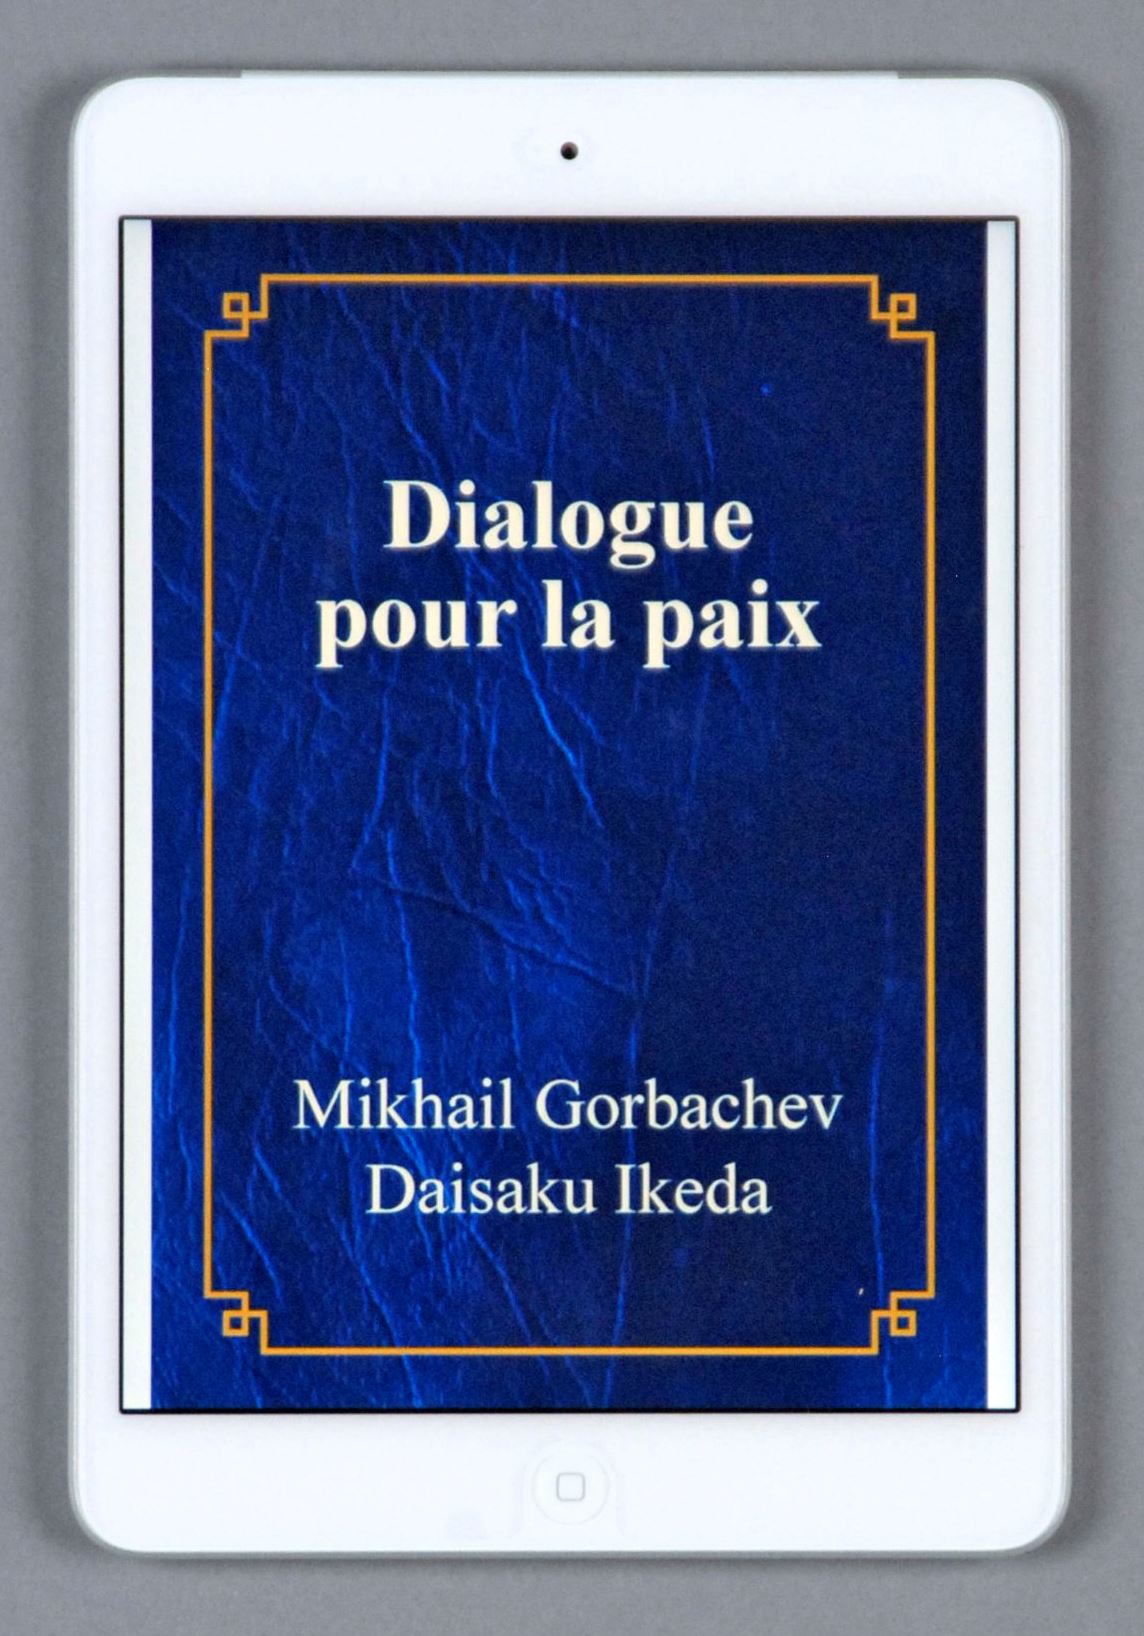 Edición francesa en libro electrónico del diálogo entre Gorbachov e Ikeda